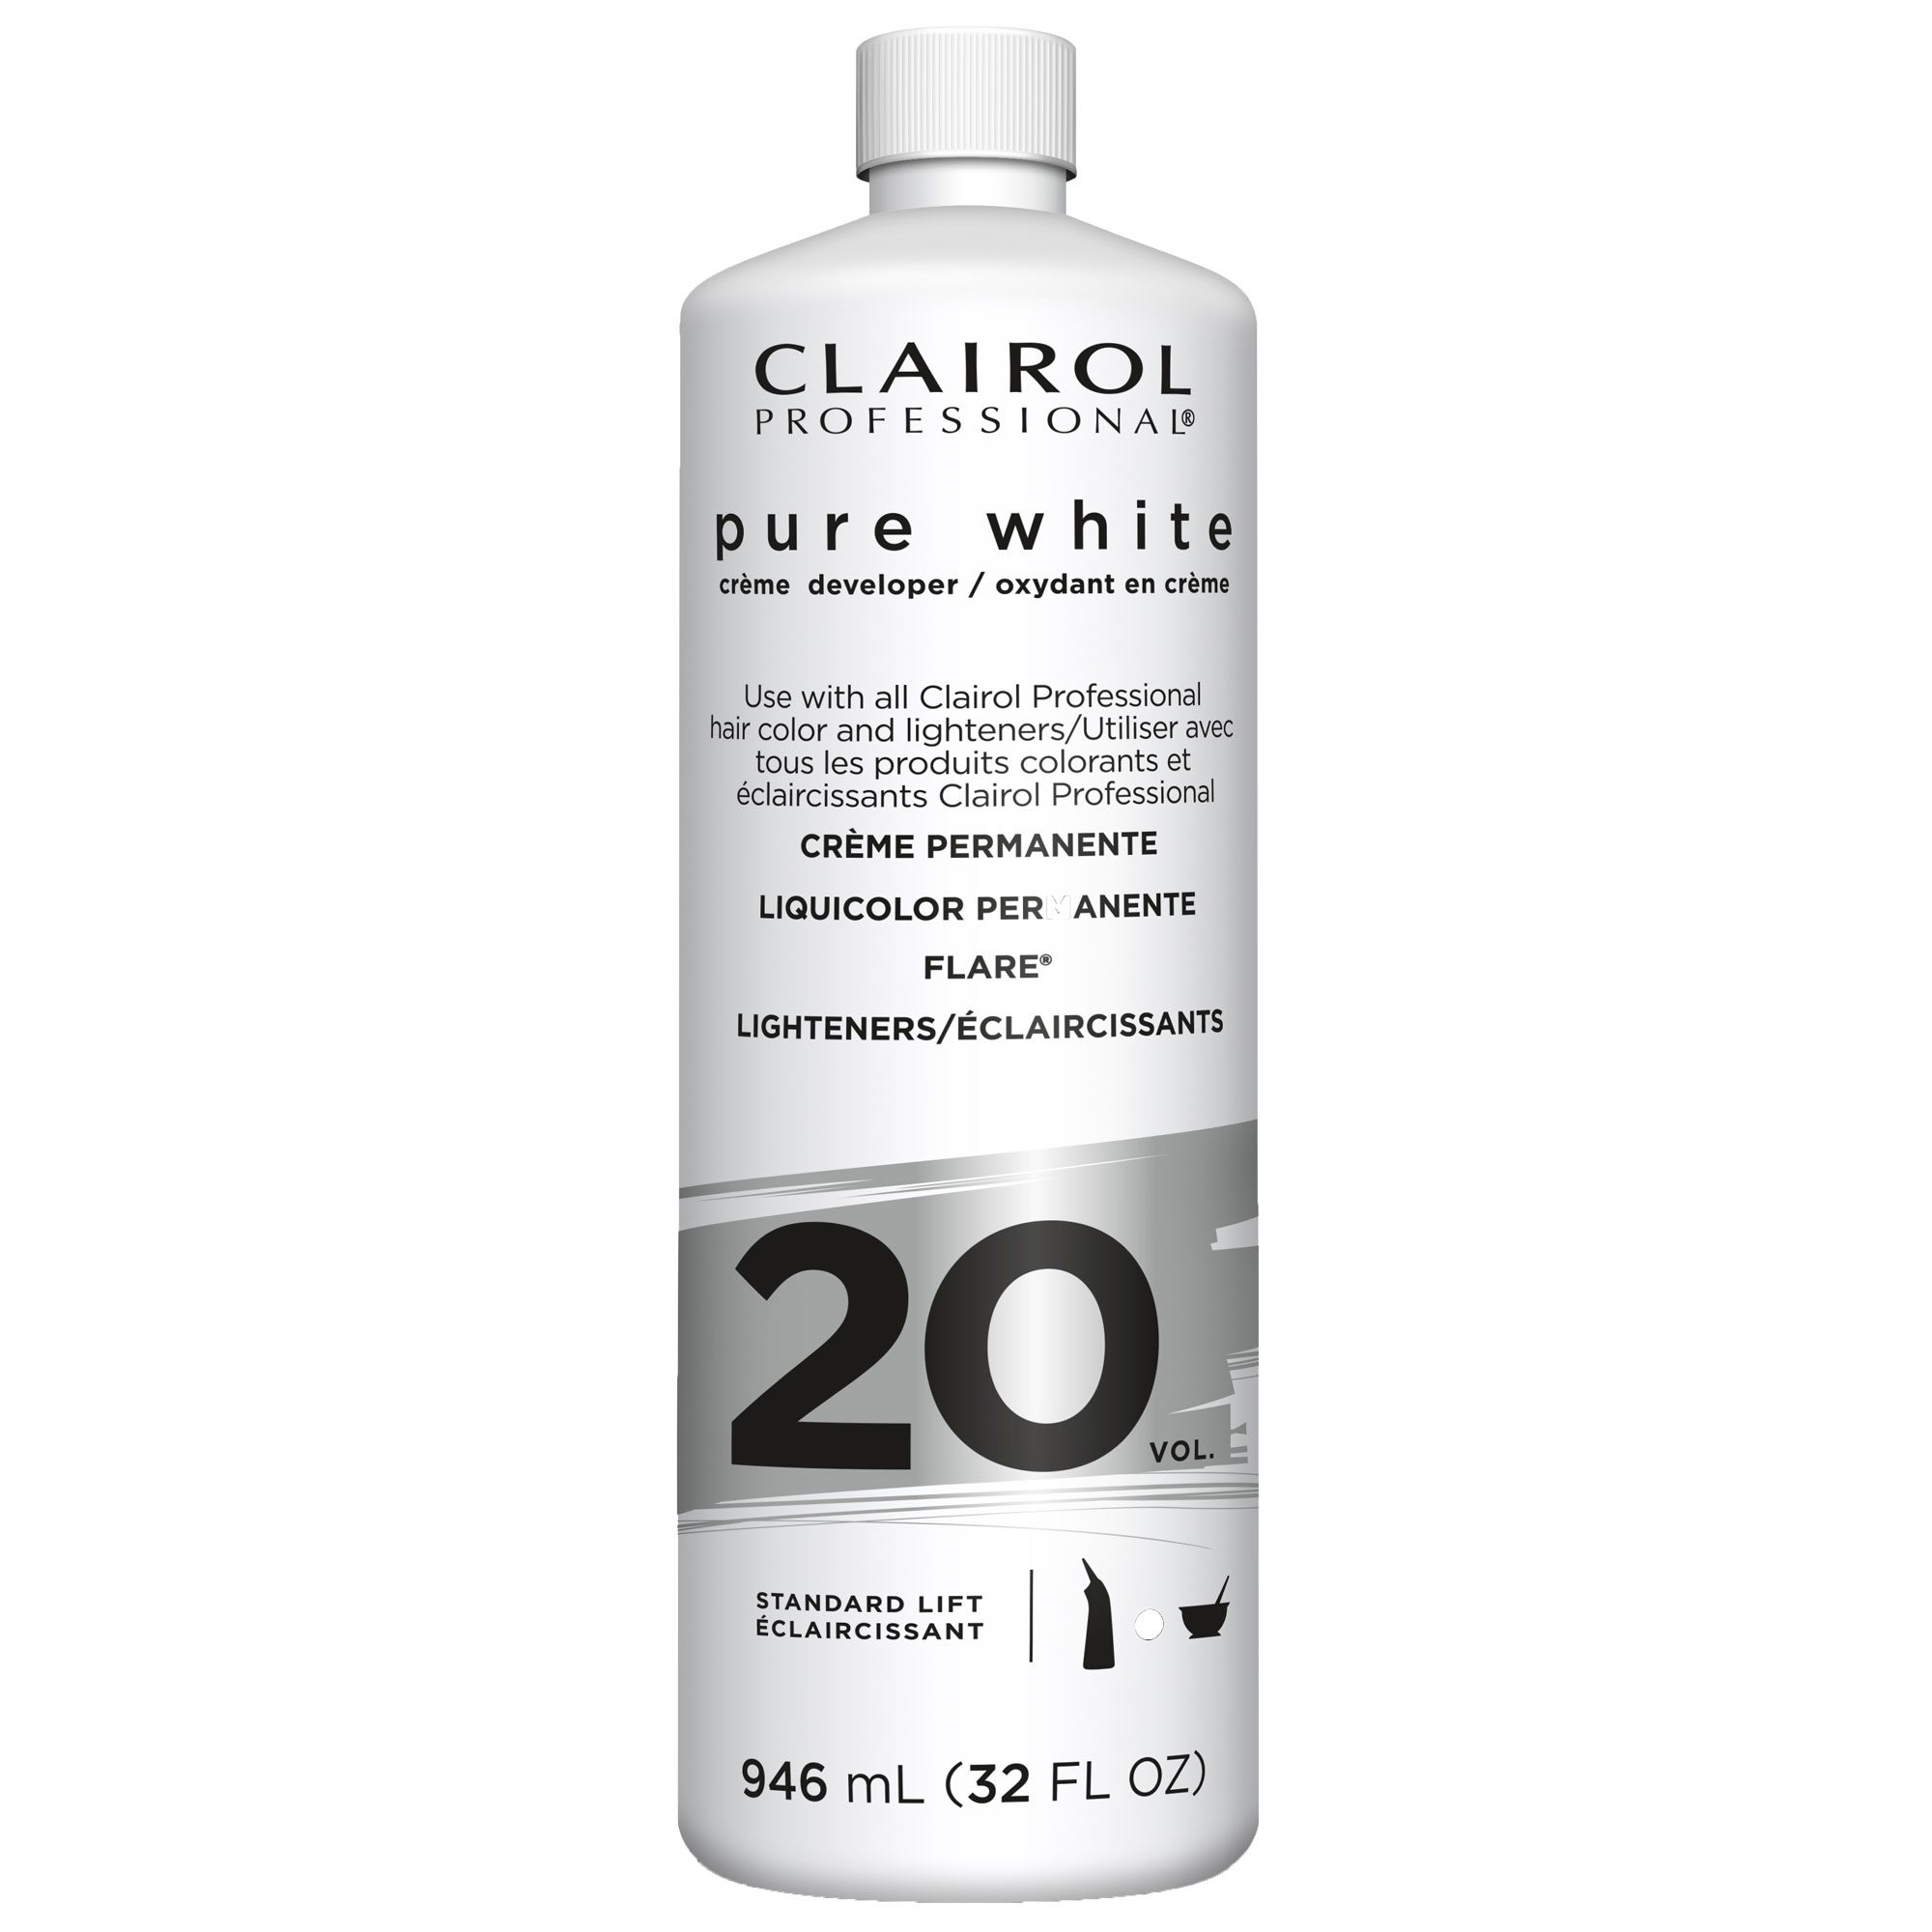 Clairol Pure White 20 Vol Creme Developer